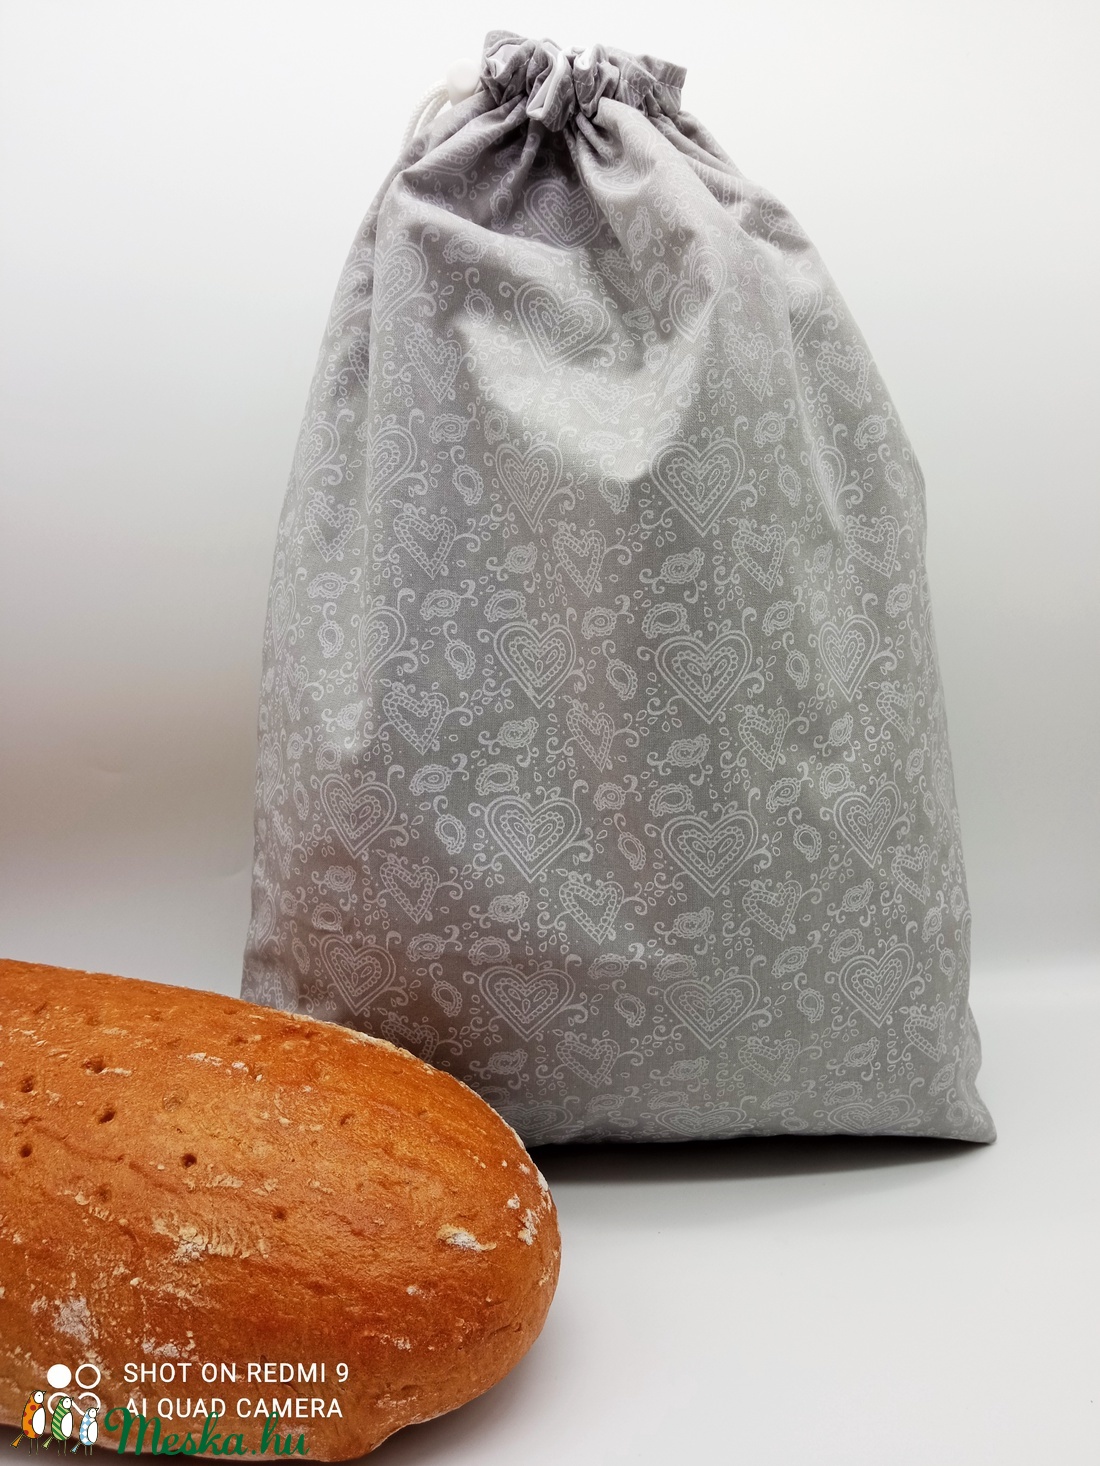 Frissentartó kenyeres zsák - nagy méret - táska & tok - bevásárlás & shopper táska - kenyeres zsák - Meska.hu